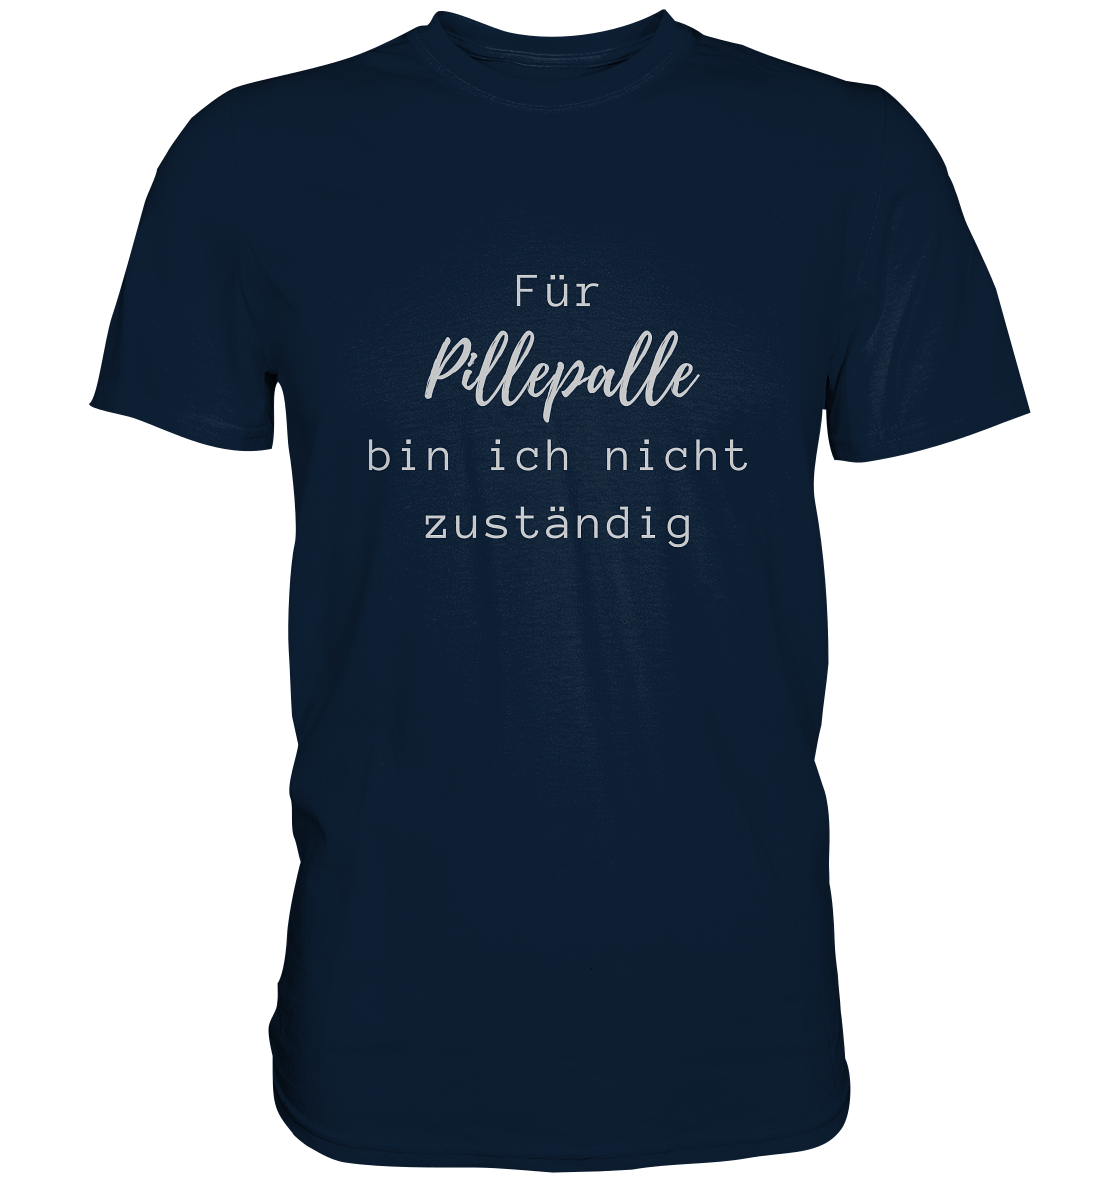 Herren-T-Shirt, Rundhals, mit weißem Aufdruck "Für Pillepalle bin ich nicht zuständig", dunkel blau